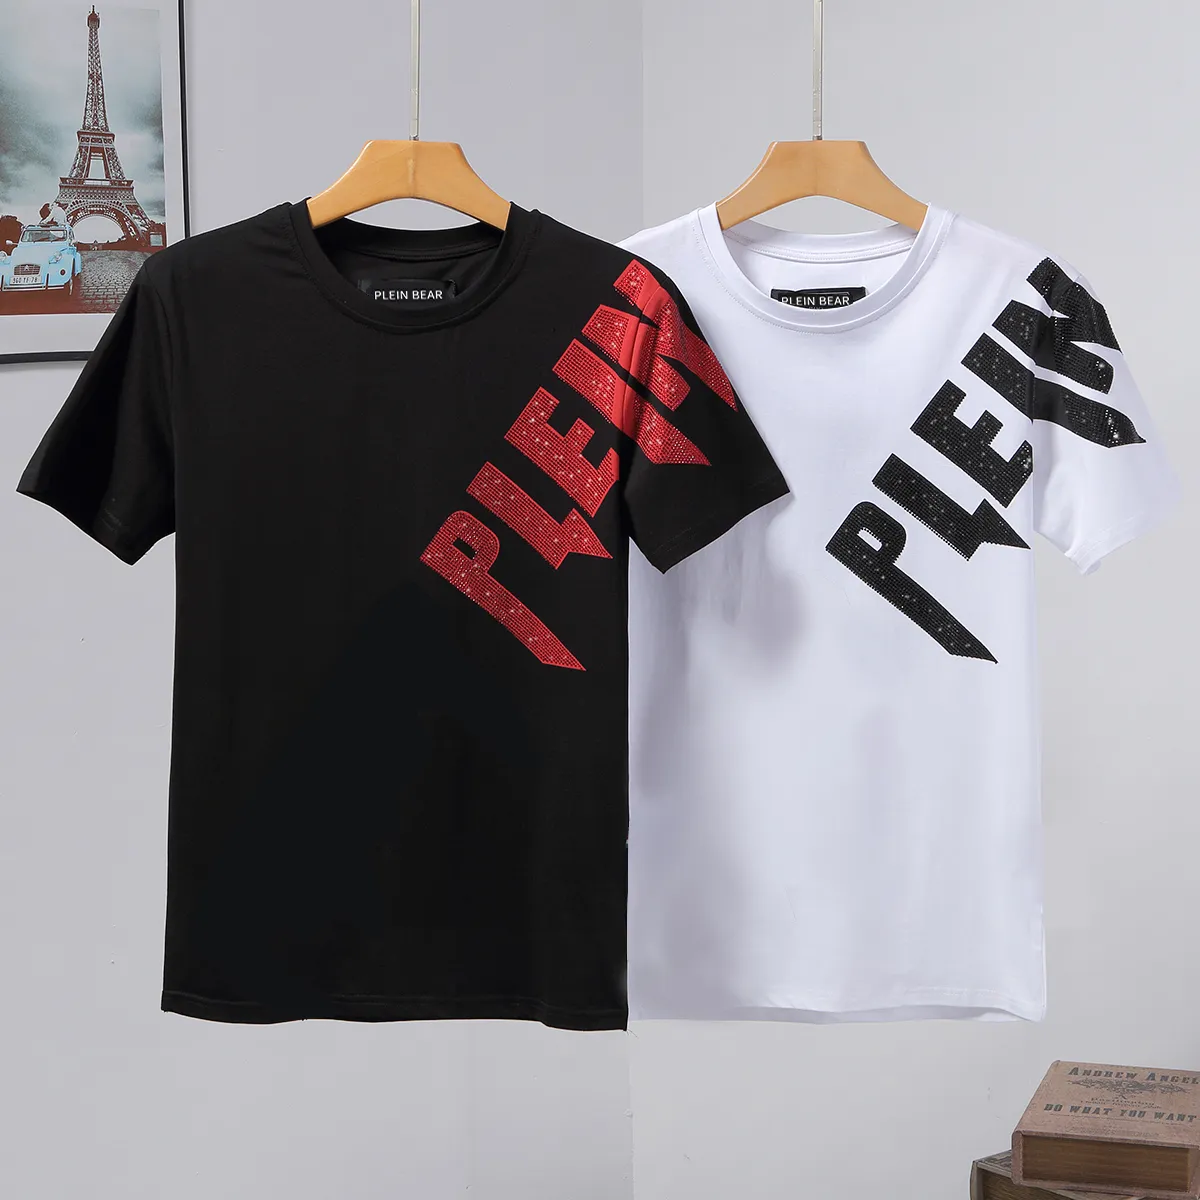 PLEIN BEAR T SHIRT Mens Designer Tshirts Rhinestone Skull Men T-shirts Classical High Quality Hip Hop Streetwear Tshirt Casual Top Tees PB 16216